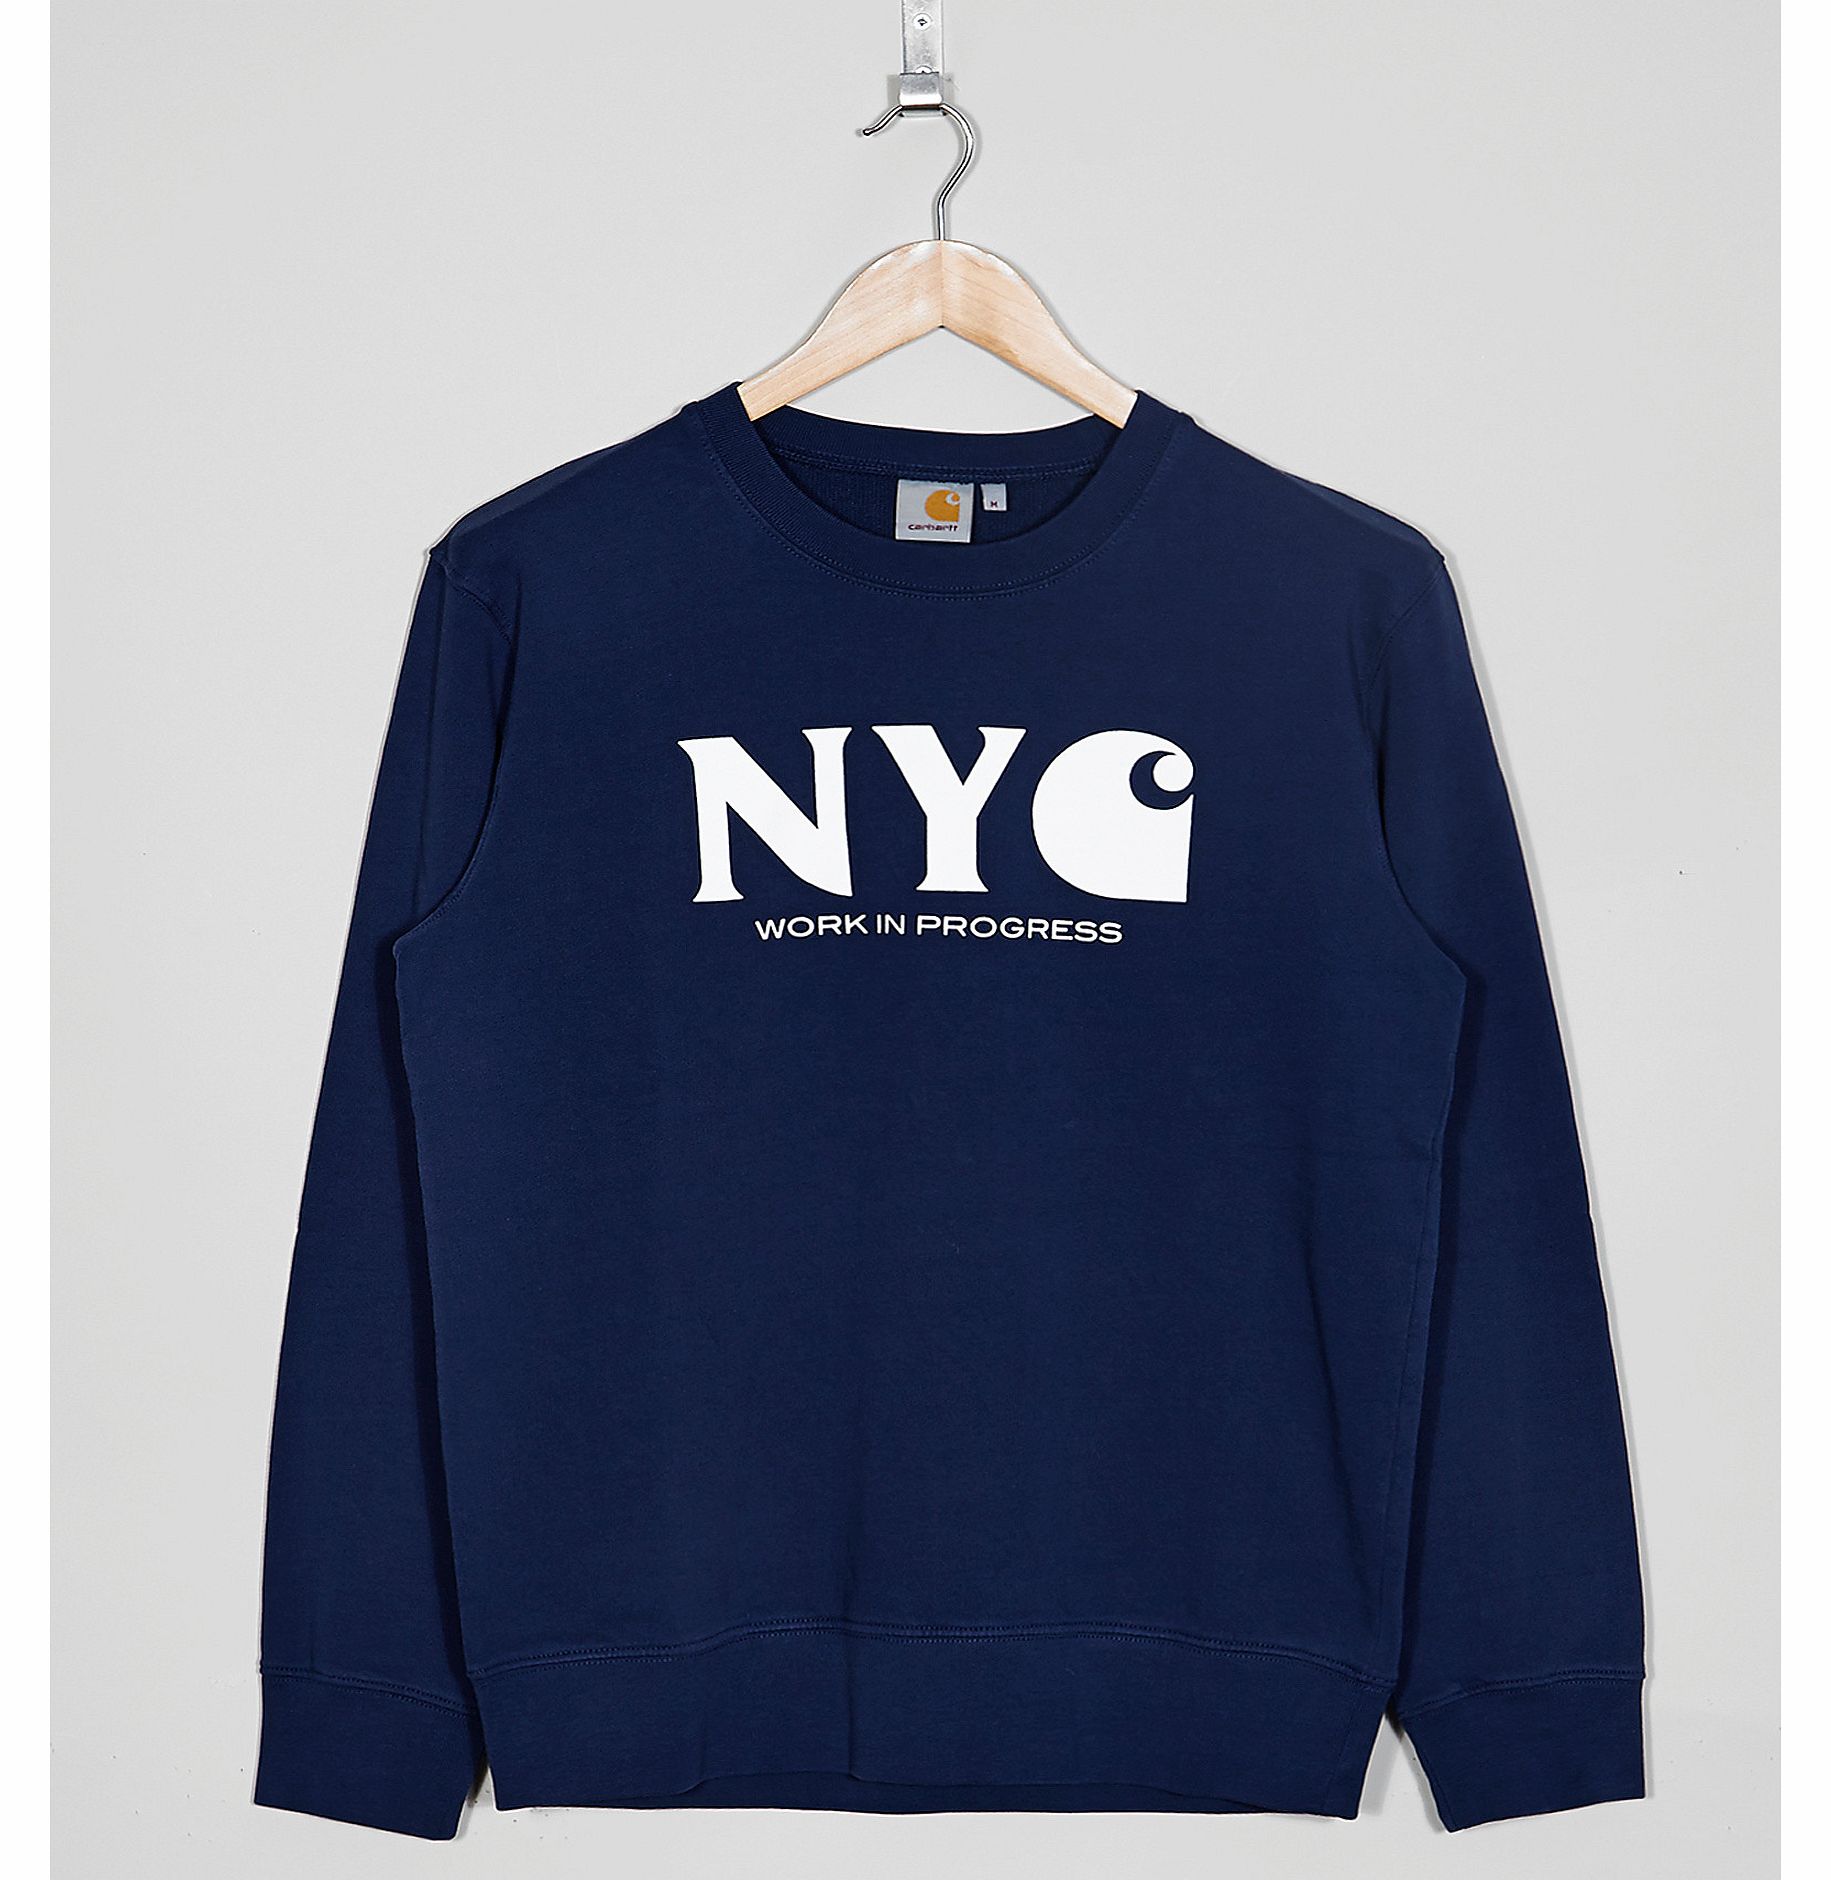 New York Sweatshirt - size? Exclusive